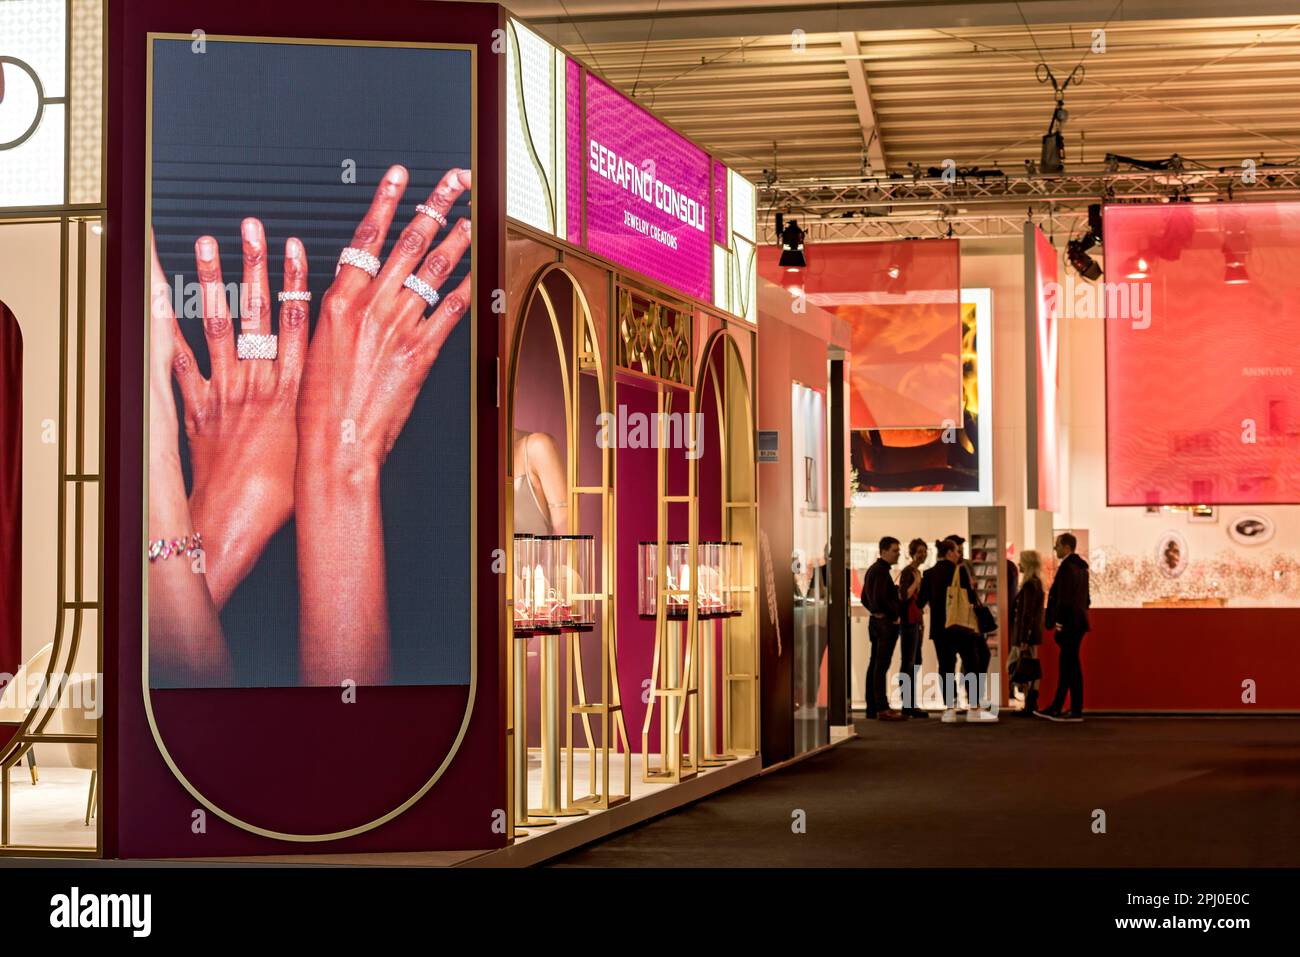 Mur vidéo avec des anneaux précieux sur les mains des femmes, stand d'exposition de bijoutier Serafino Consoli Juwelery créateurs, Inhorgenta, salon de la bijouterie Banque D'Images